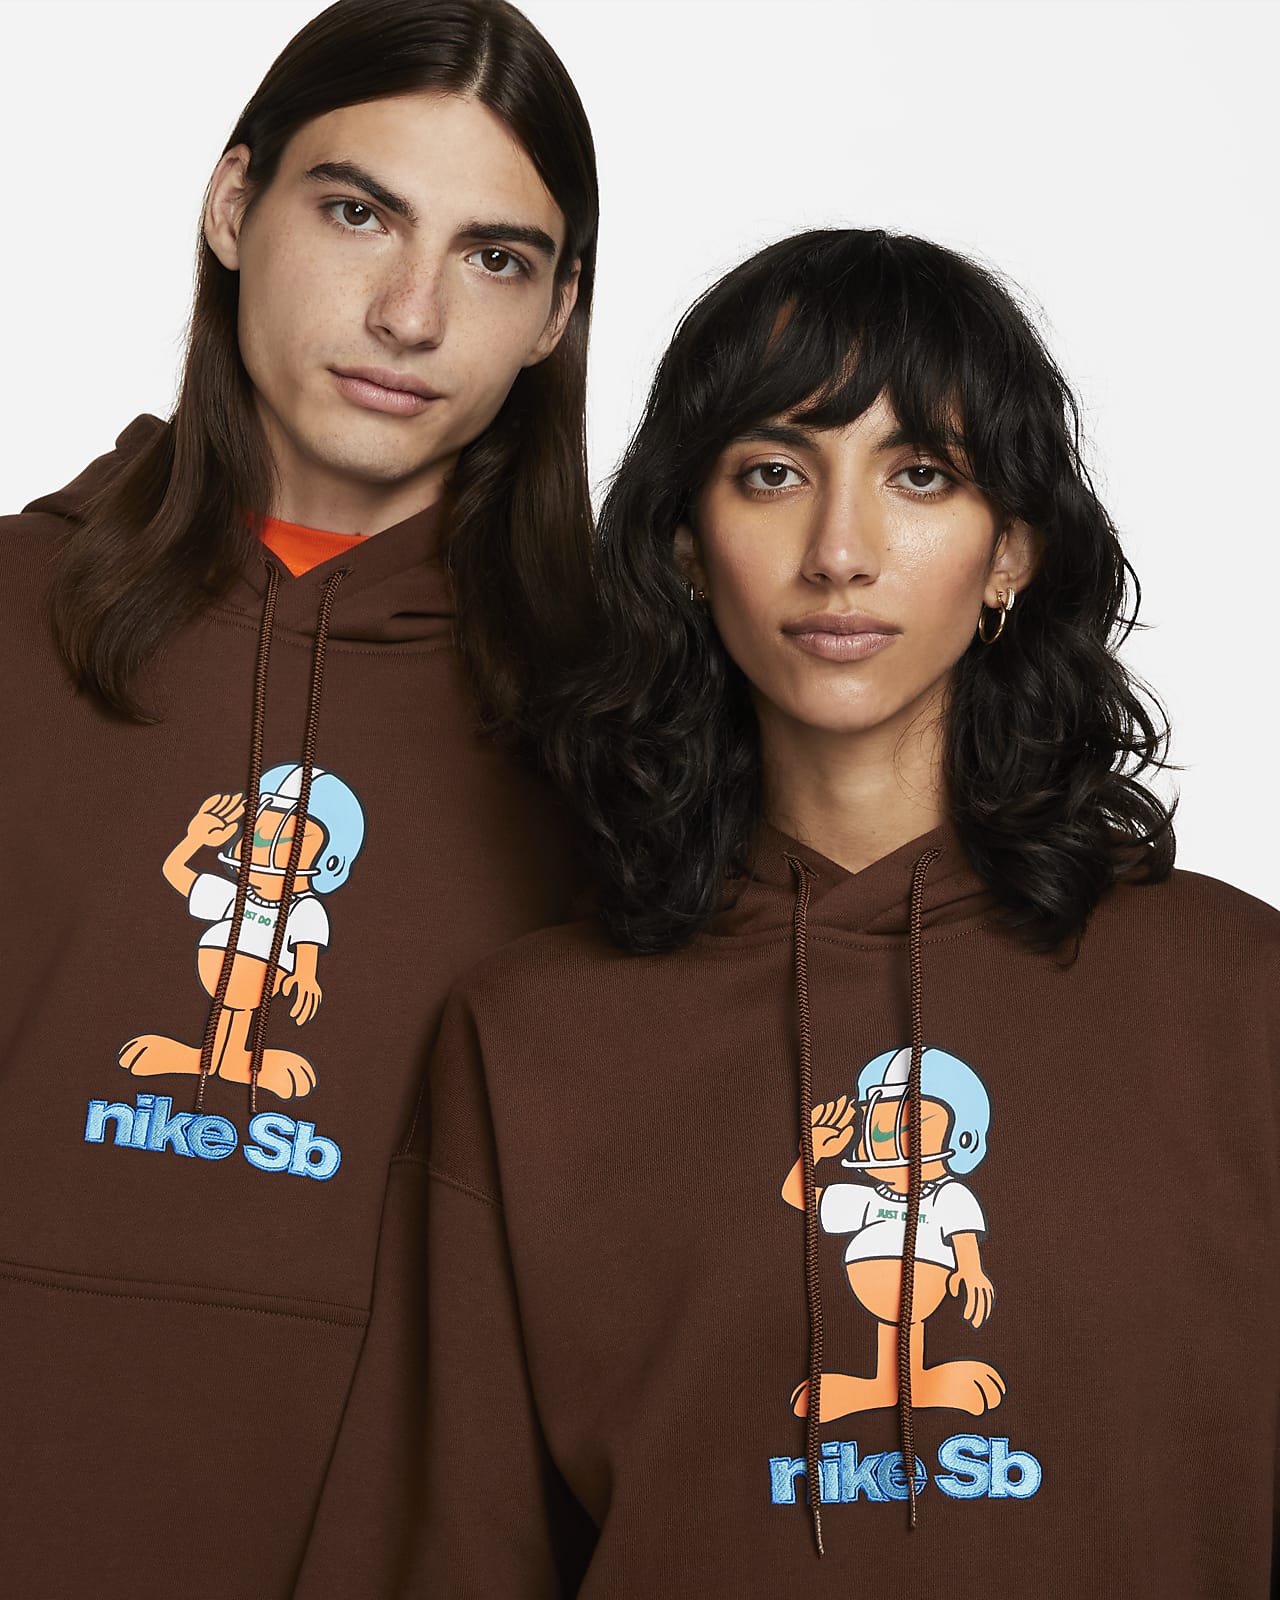 Nike SB Fleece Skate Pullover Hoodie.